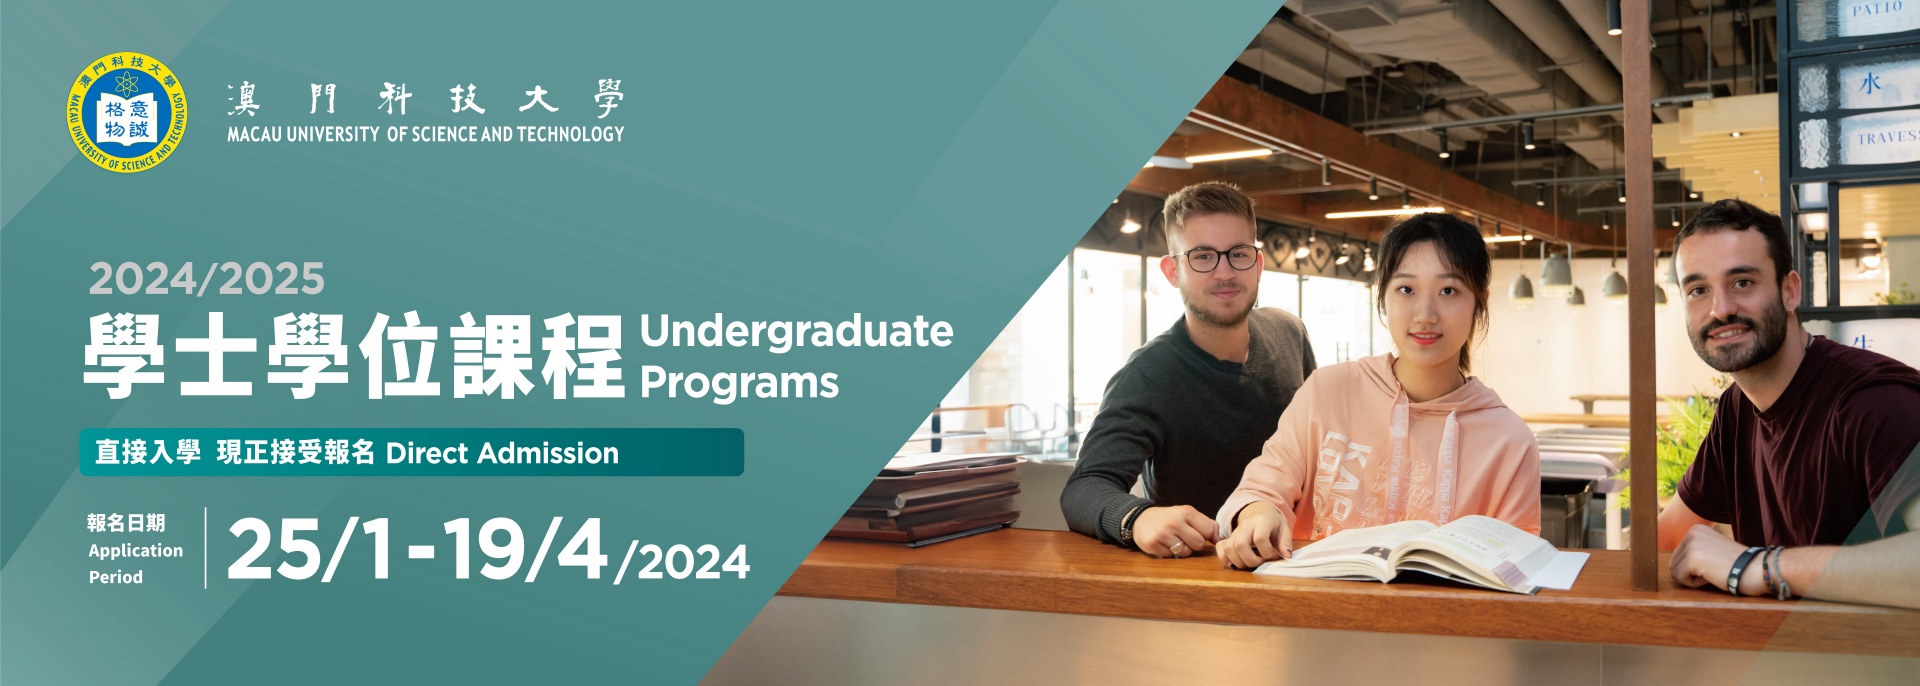 2024/2025 Undergraduate Programs Direct Admission